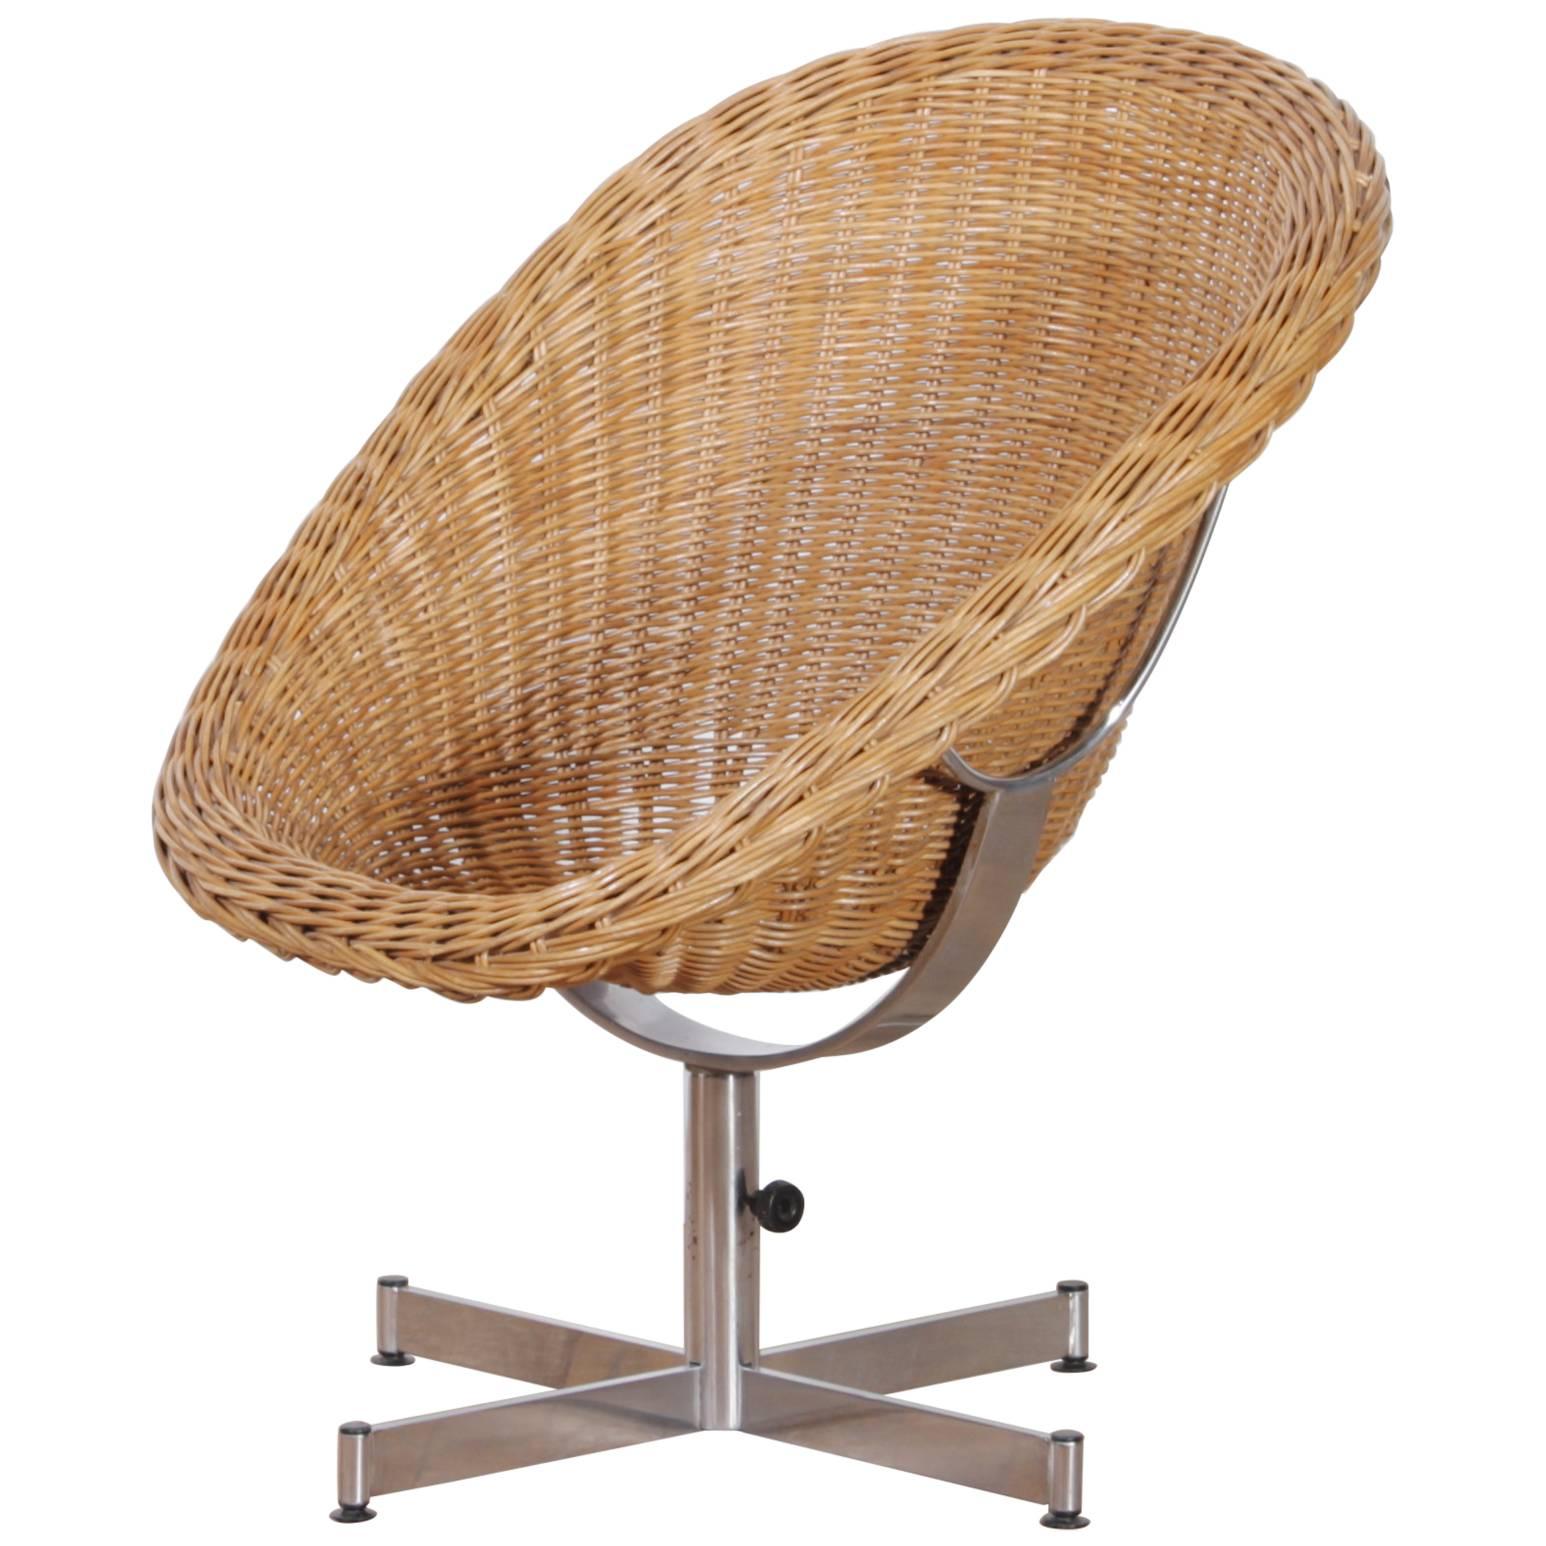 1950s, Rattan Chair by Dirk Van Sliedrecht